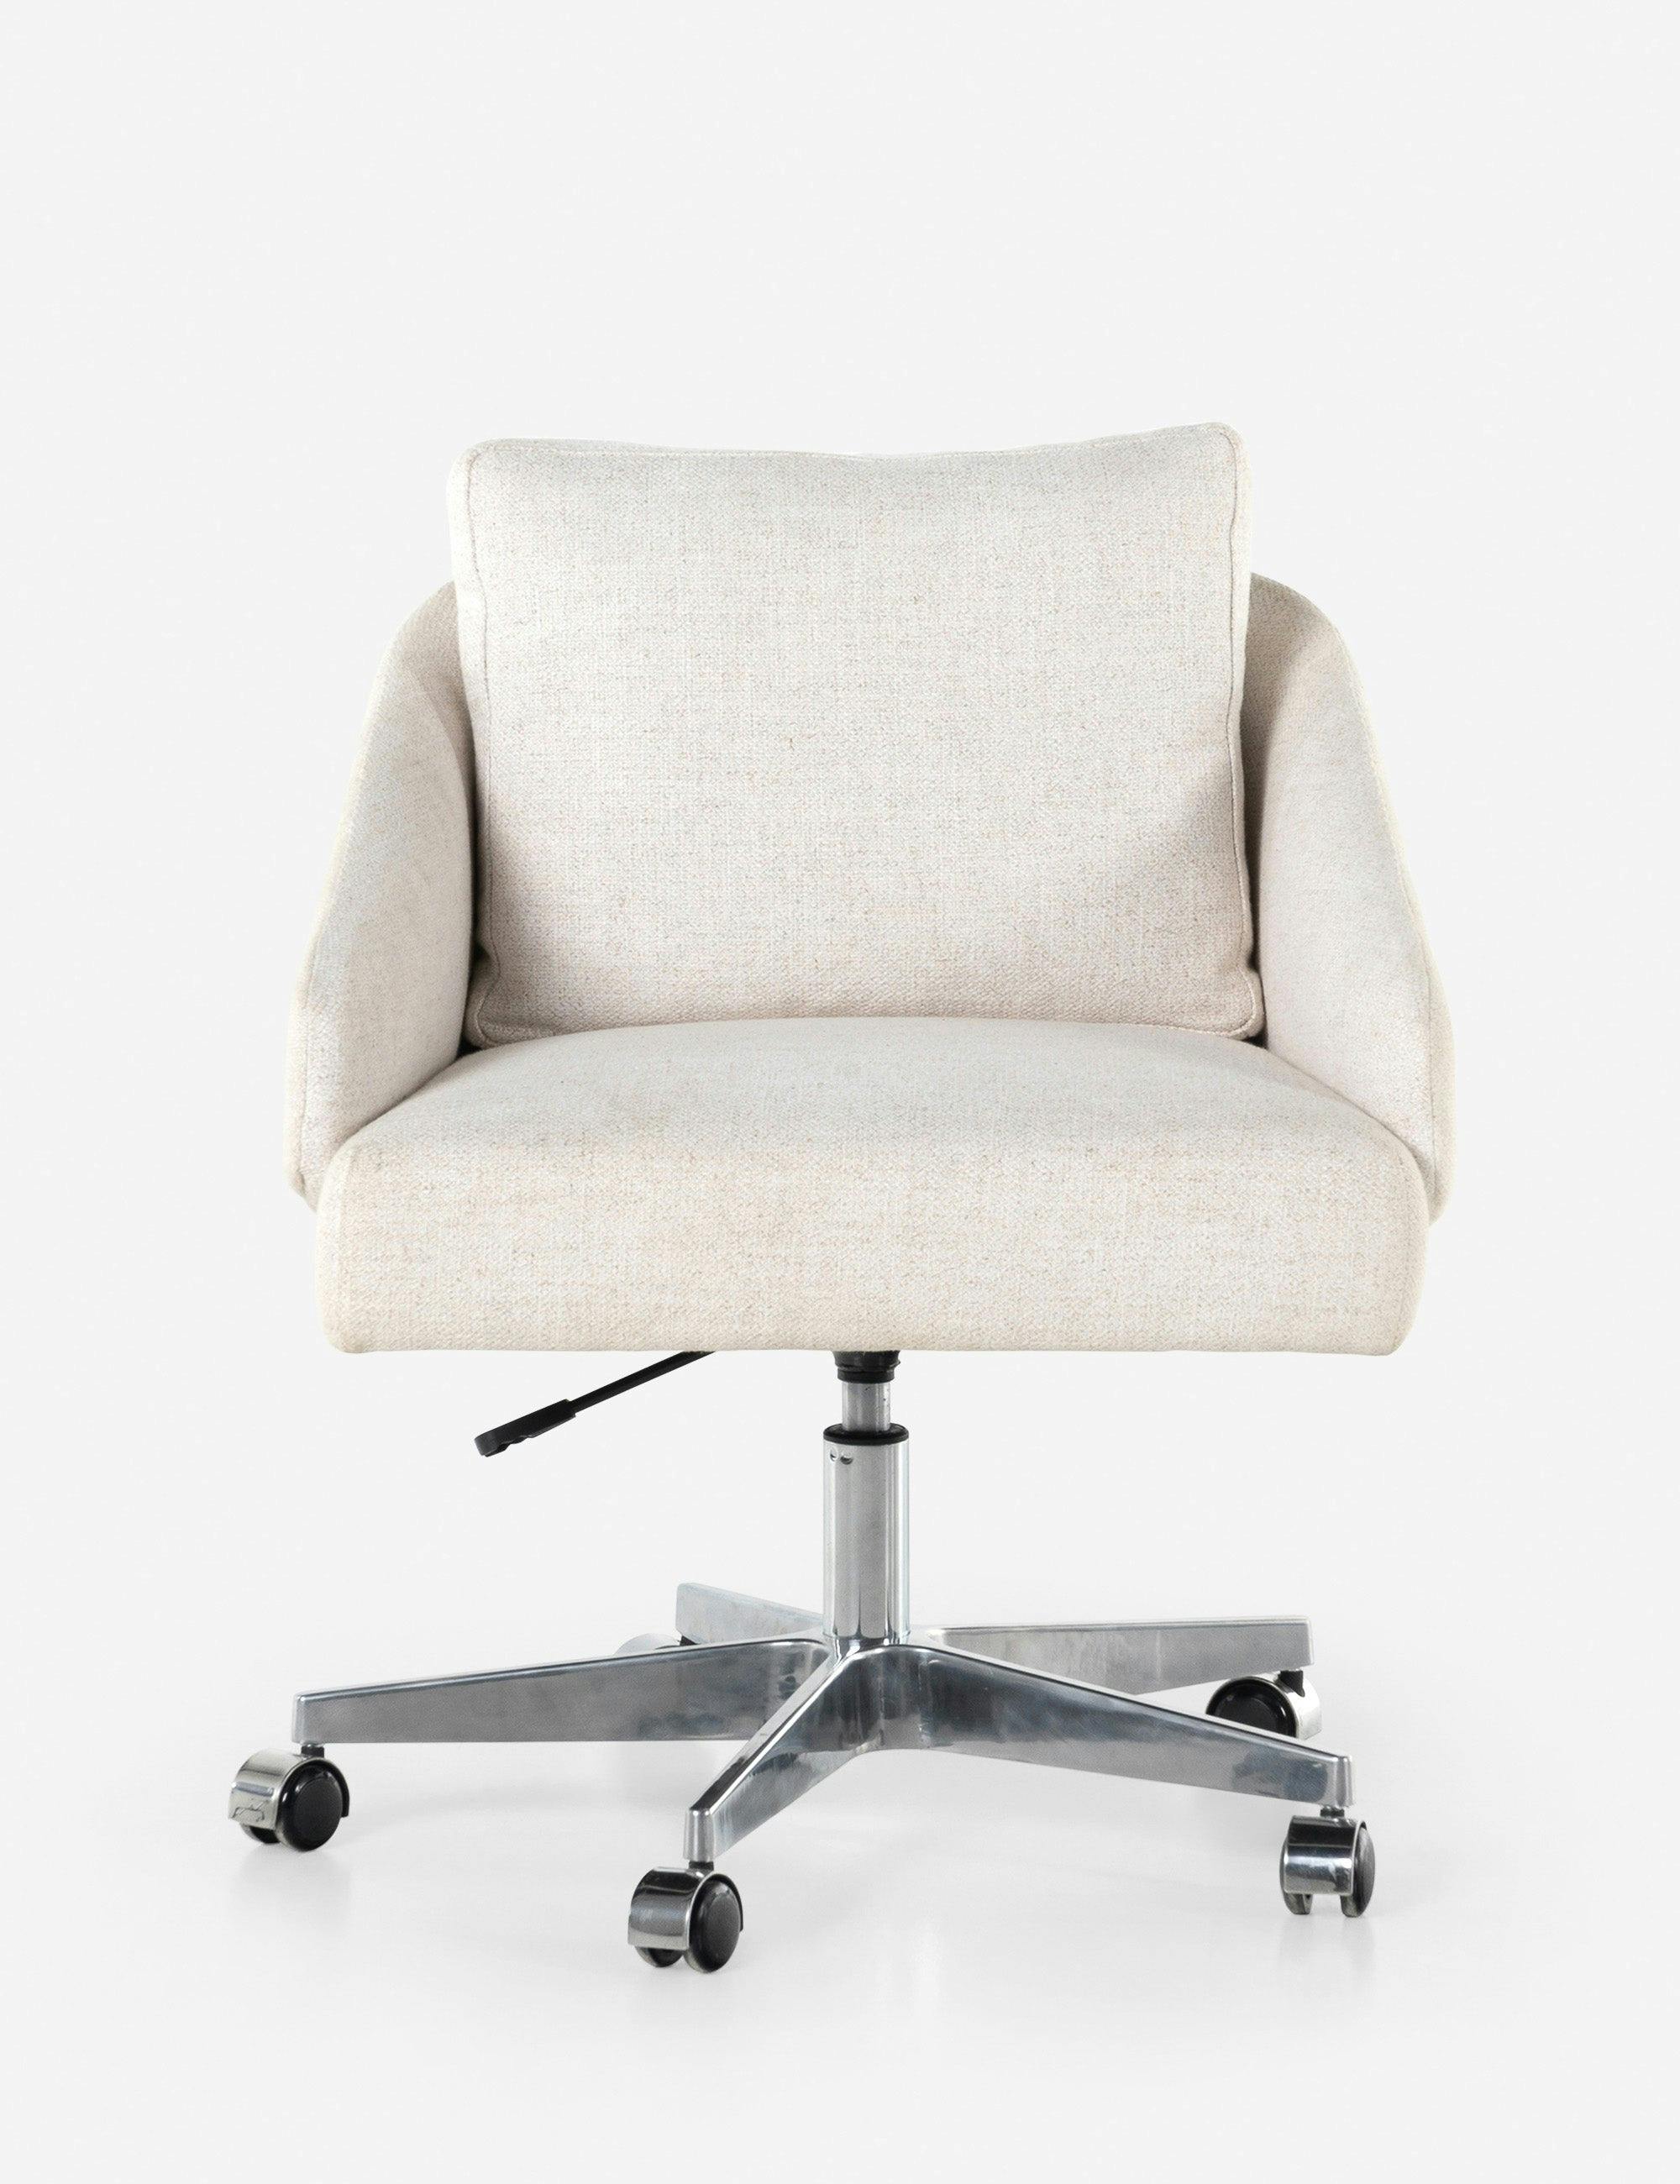 Elegant Dover Crescent Polished Nickel Adjustable Office Chair